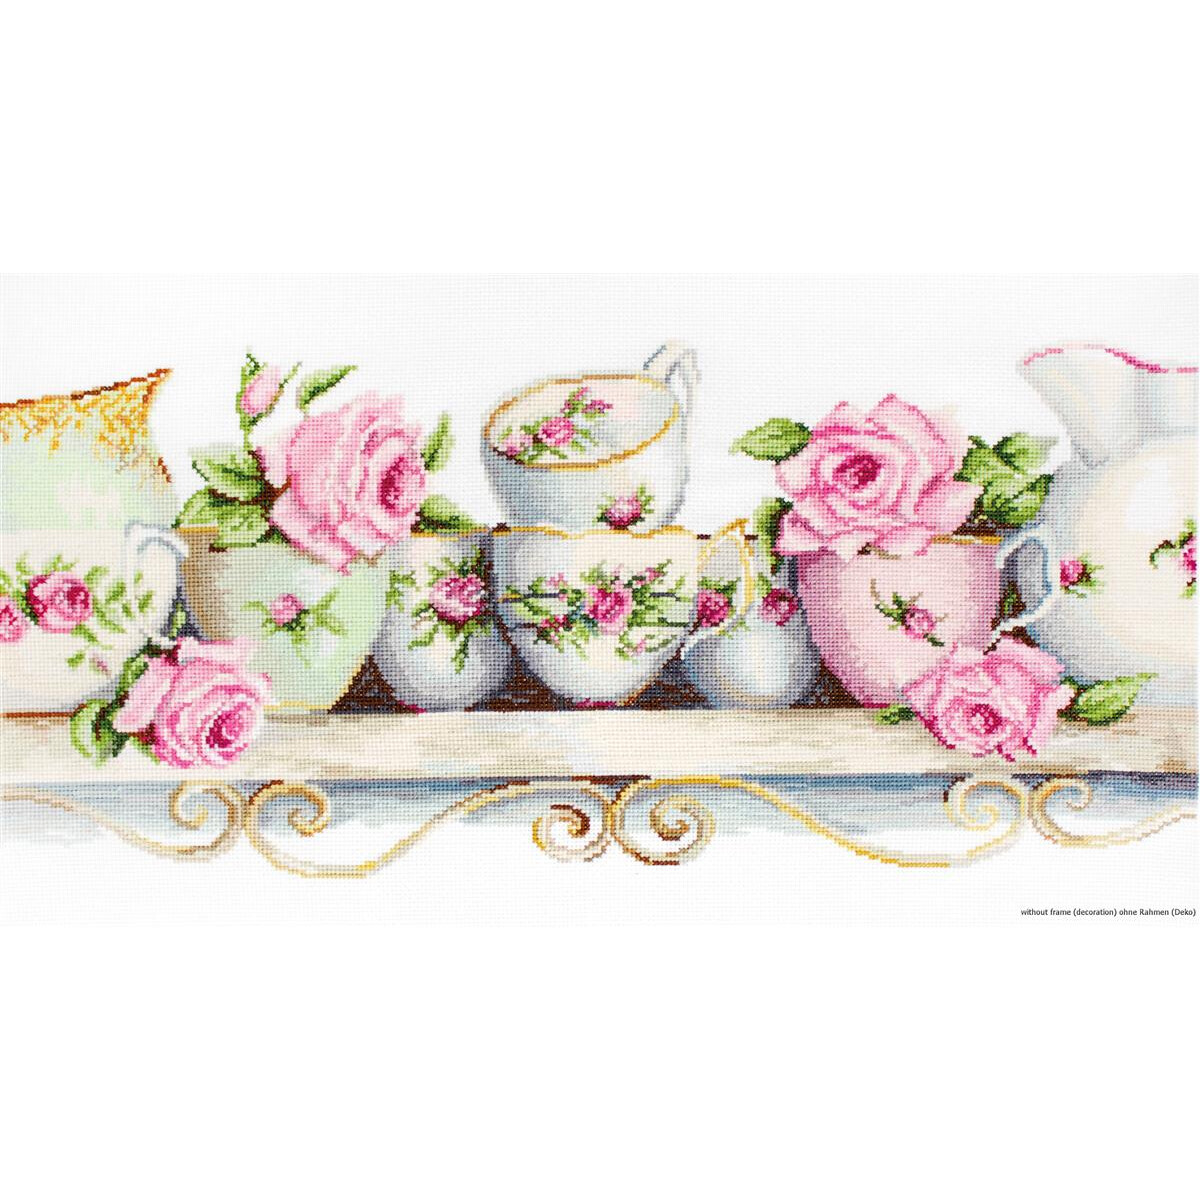 A decorative shelf with various porcelain tea sets...